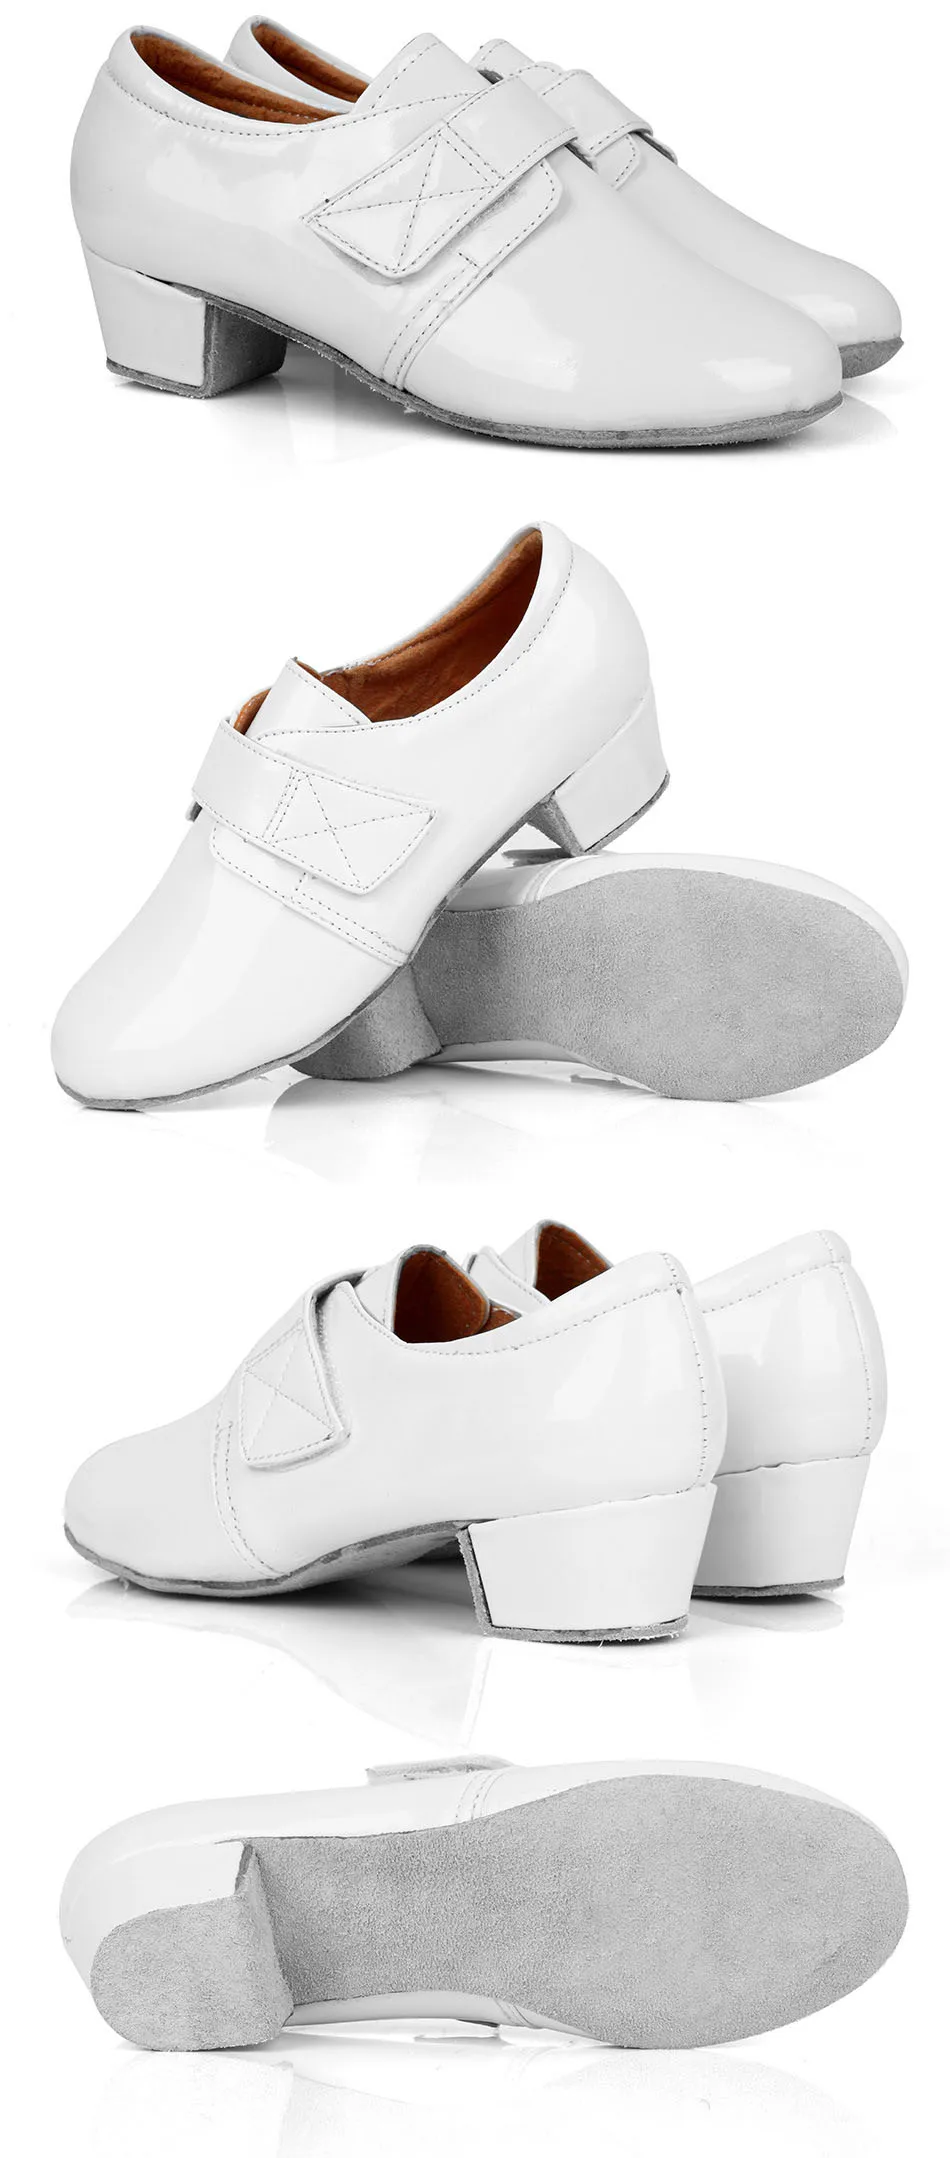 Новые современные мужские туфли для латинских танцев черные/белые ПУ Танго Сальса Румба Мужские Танцевальные Туфли для мальчиков детей взрослых C66